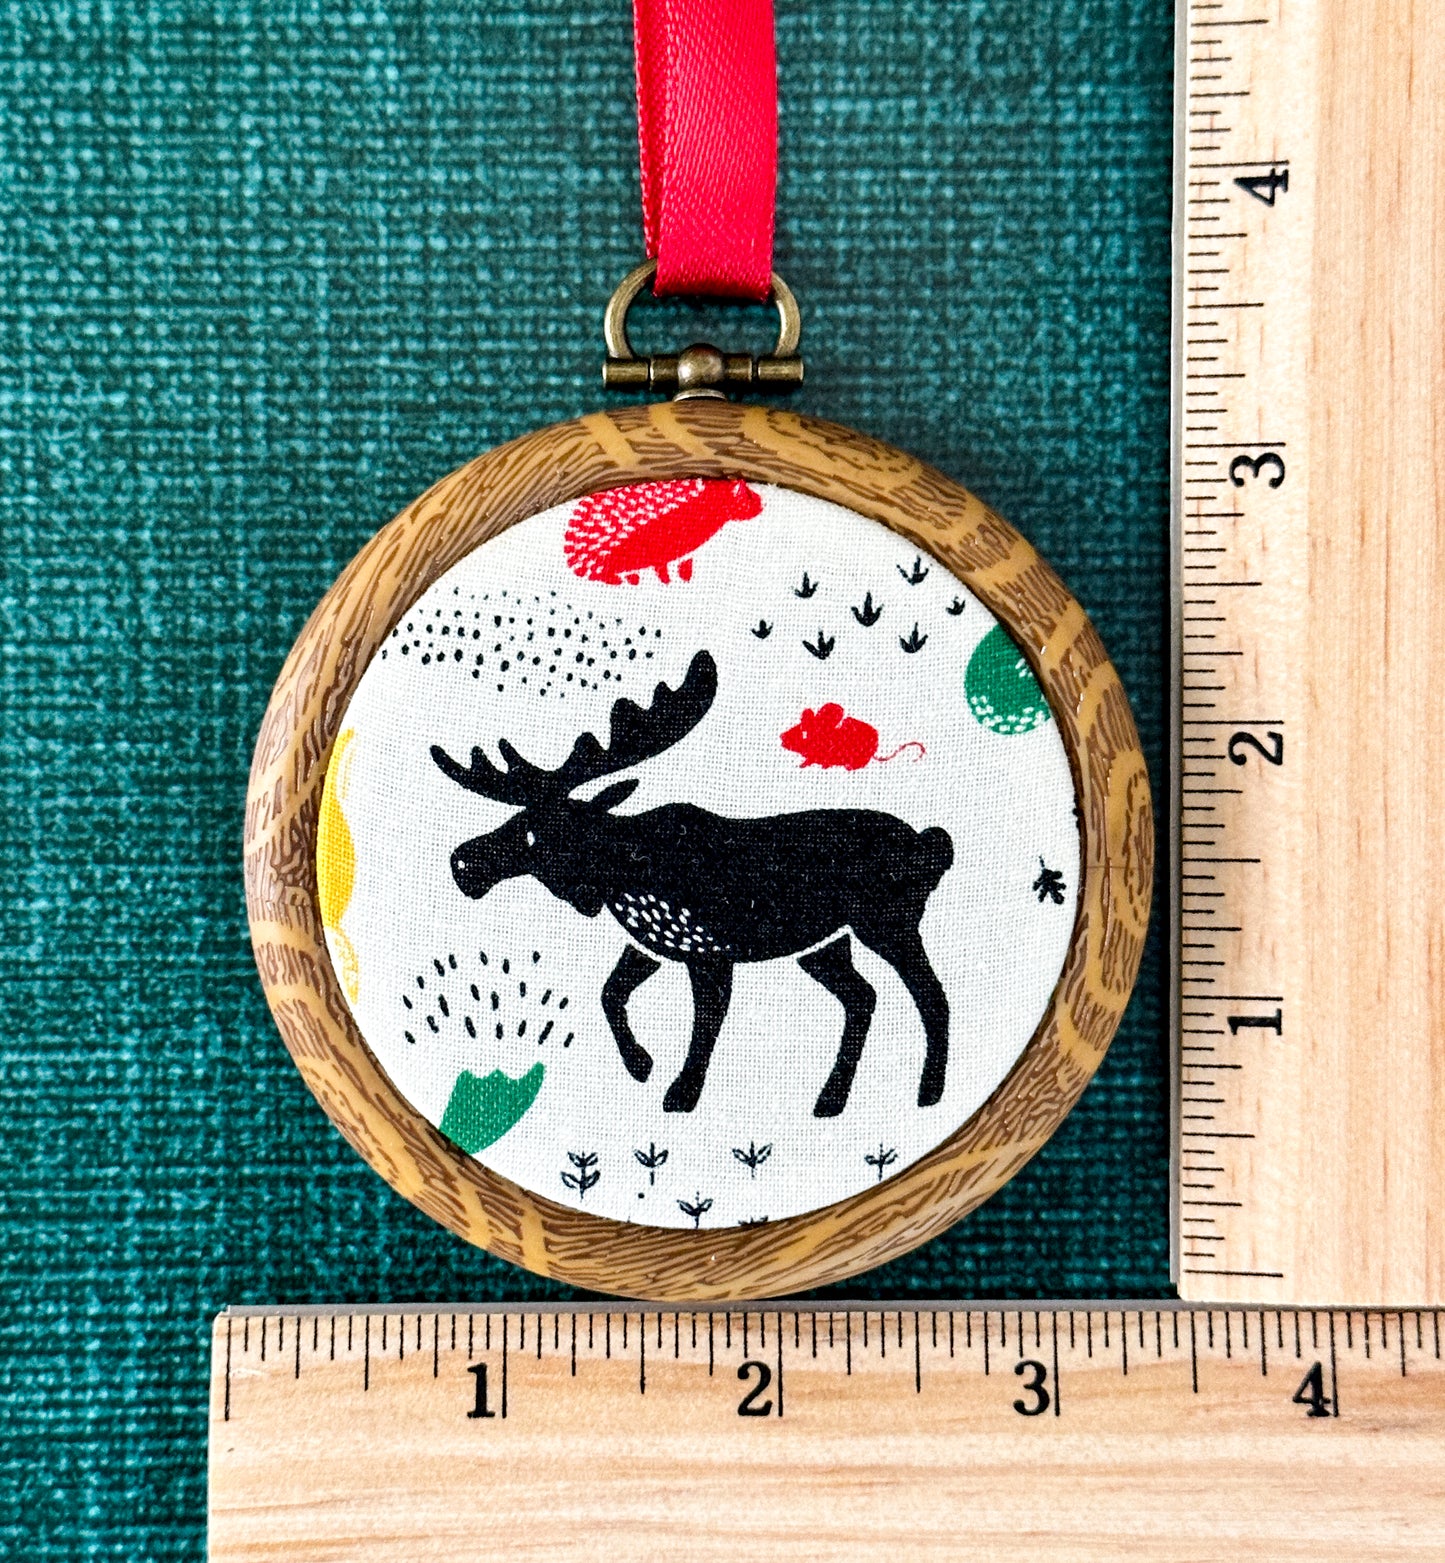 Rustic Woodland Ornaments: Deer & Moose Designs